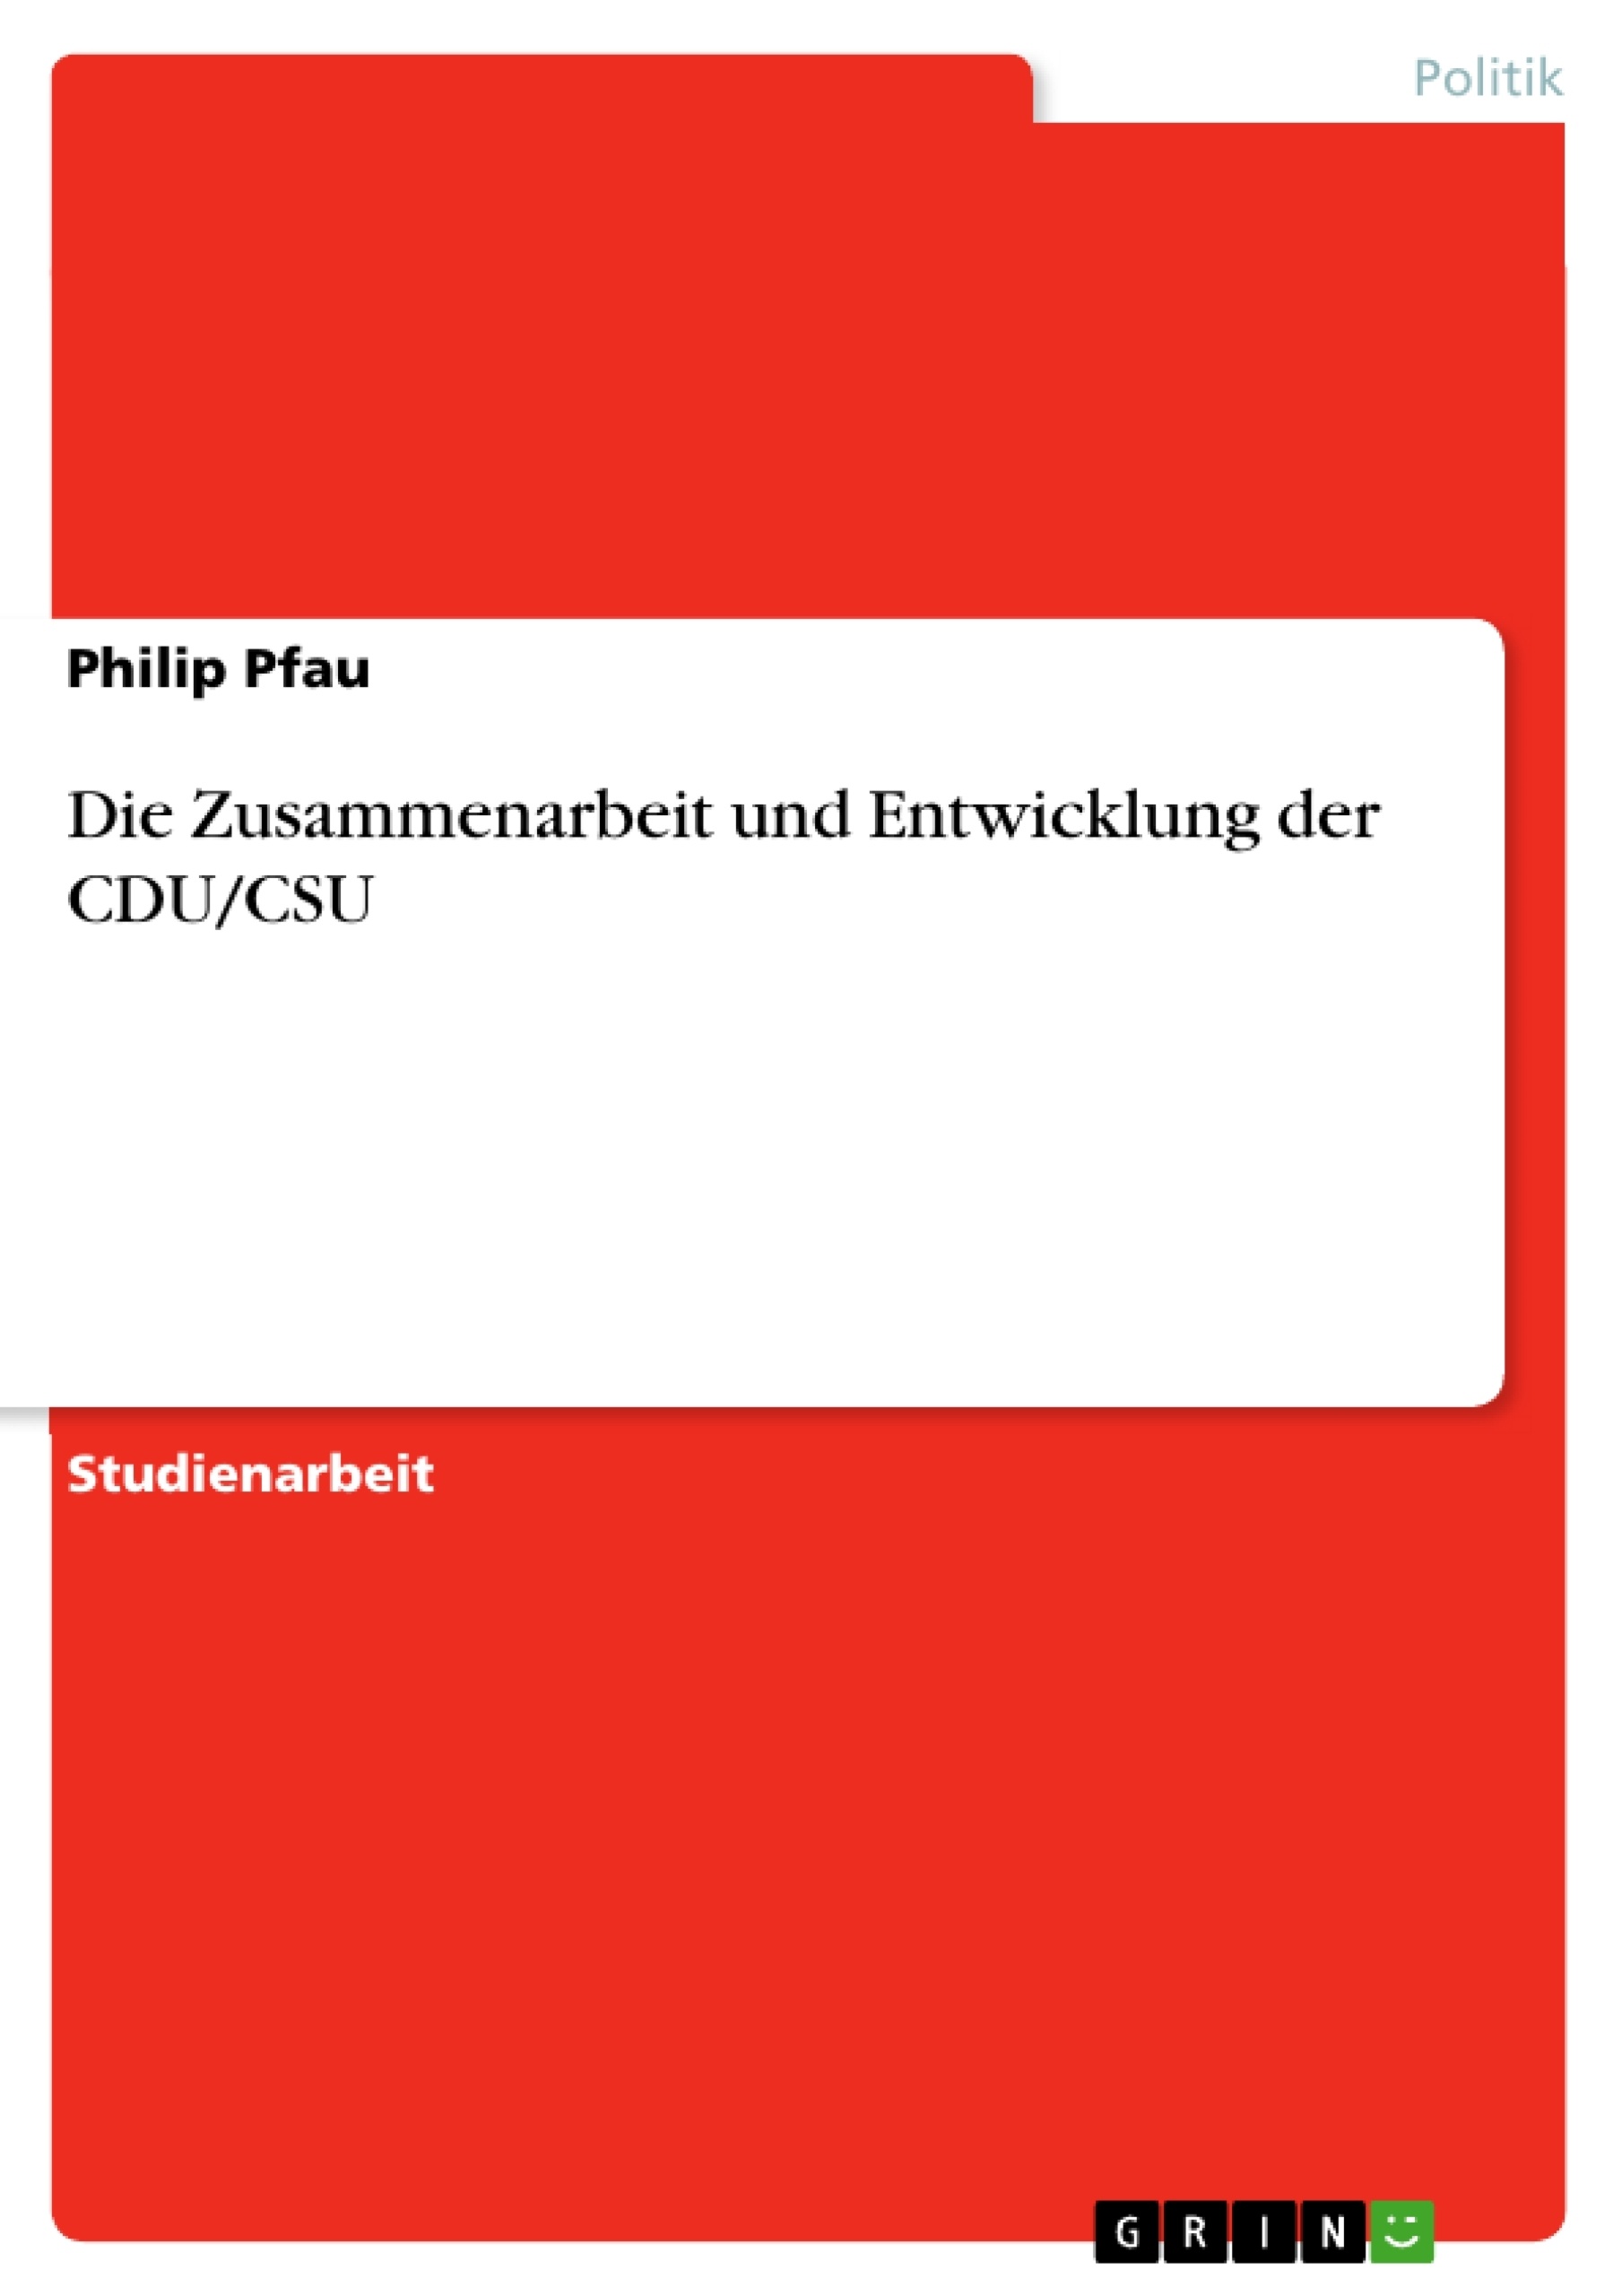 Title: Die Zusammenarbeit und Entwicklung der CDU/CSU